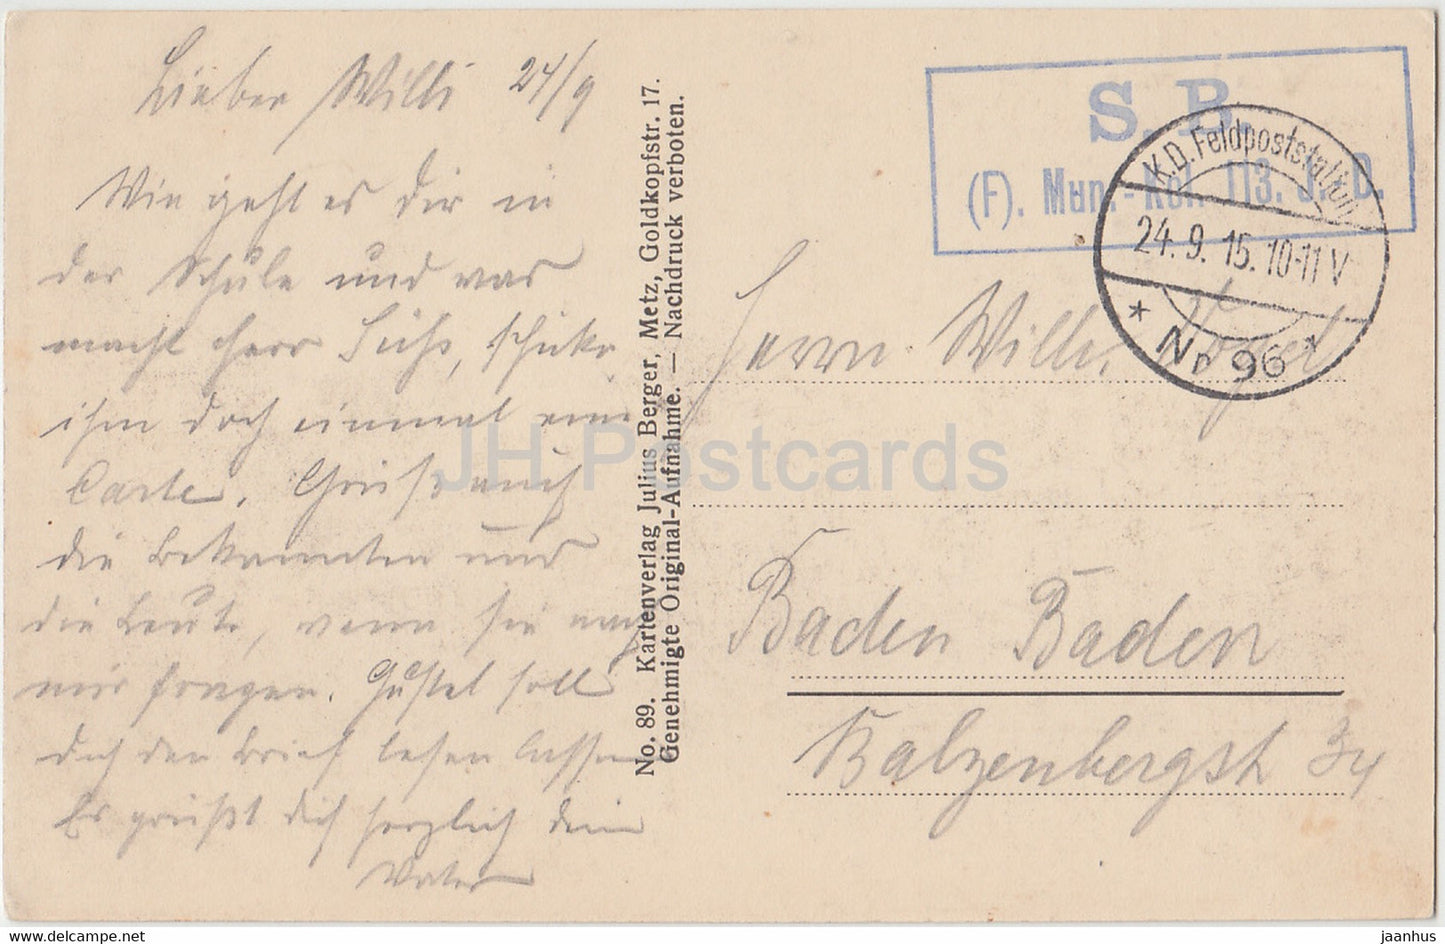 Strasse à Harville - 89 - Feldpost - Militaire - carte postale ancienne - 1915 - France - utilisé